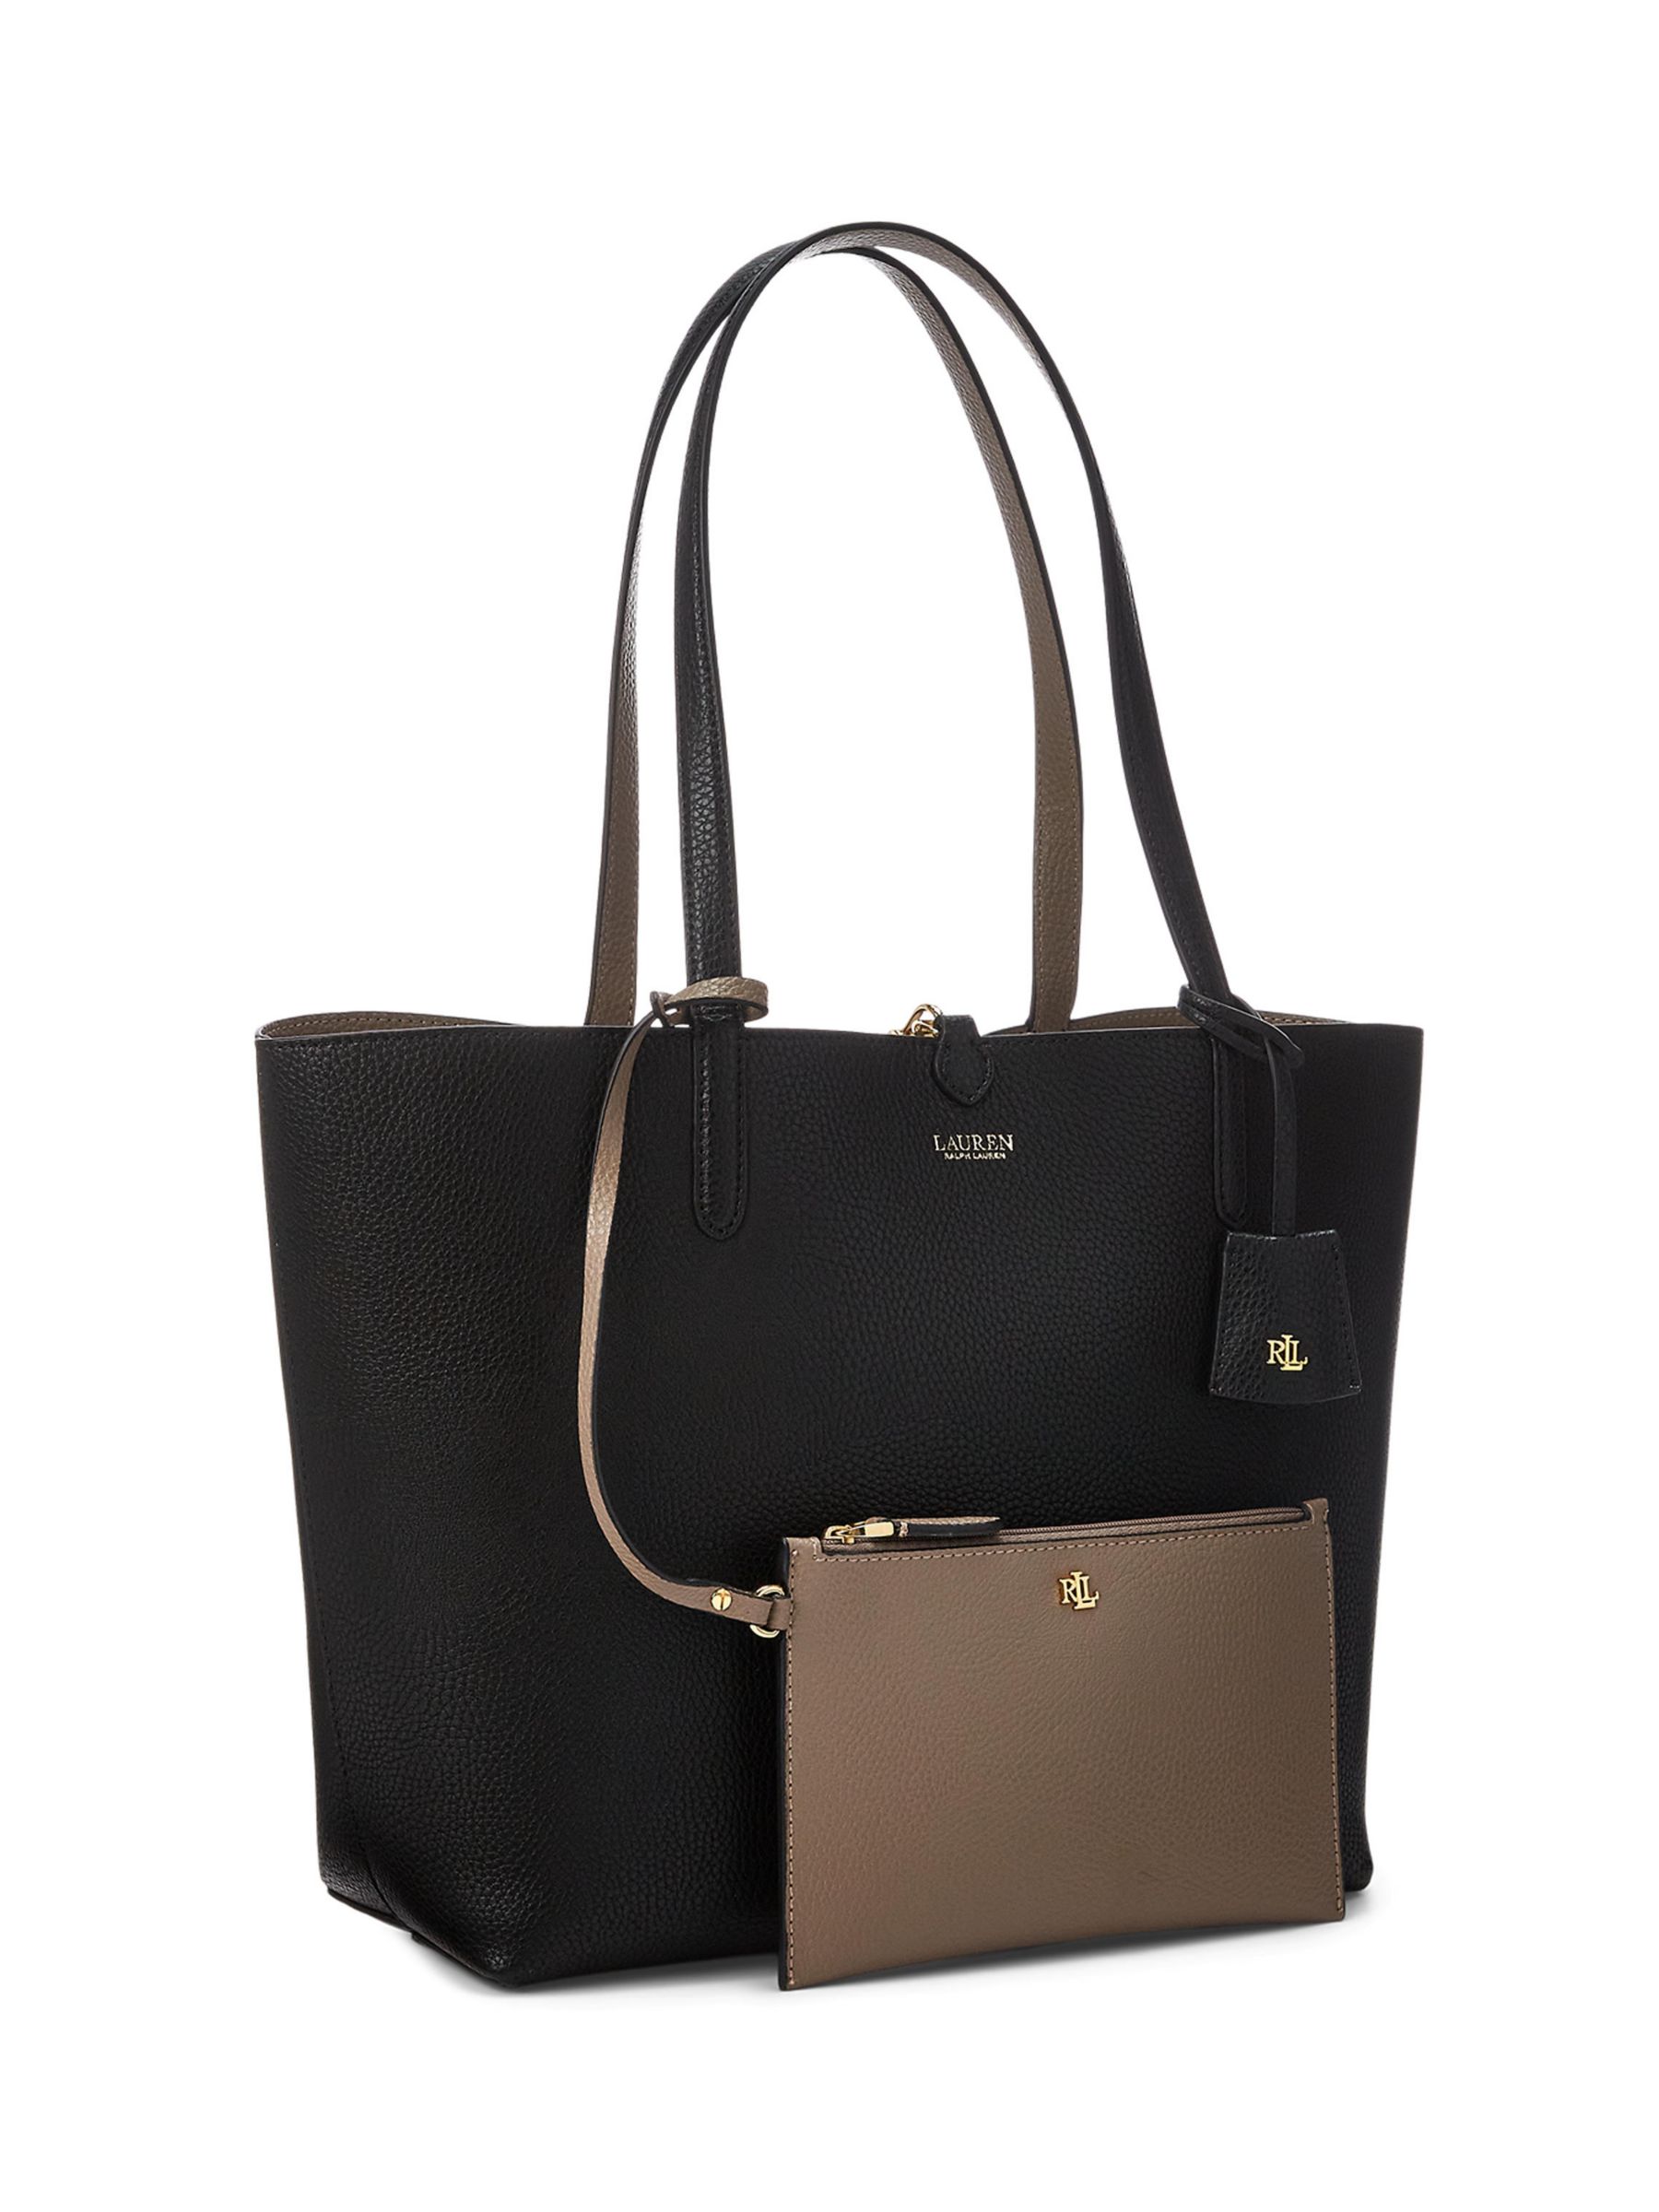 Lauren Ralph Lauren Reversible Tote Bag, Black/Taupe at John Lewis &  Partners